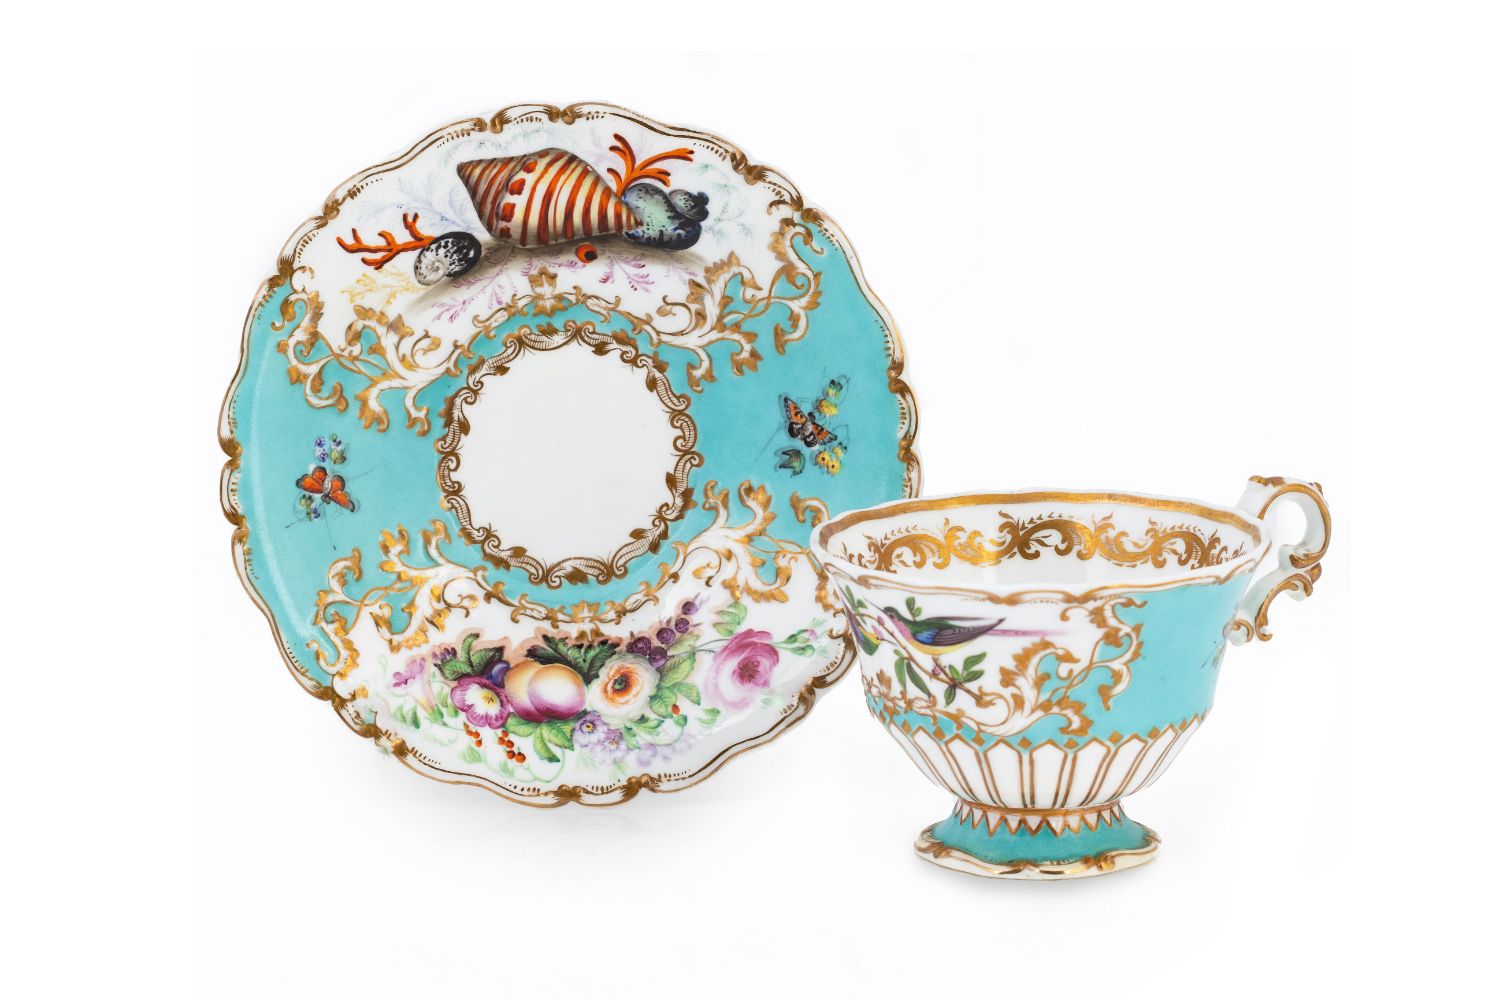 Single Owner Antique European Ceramics